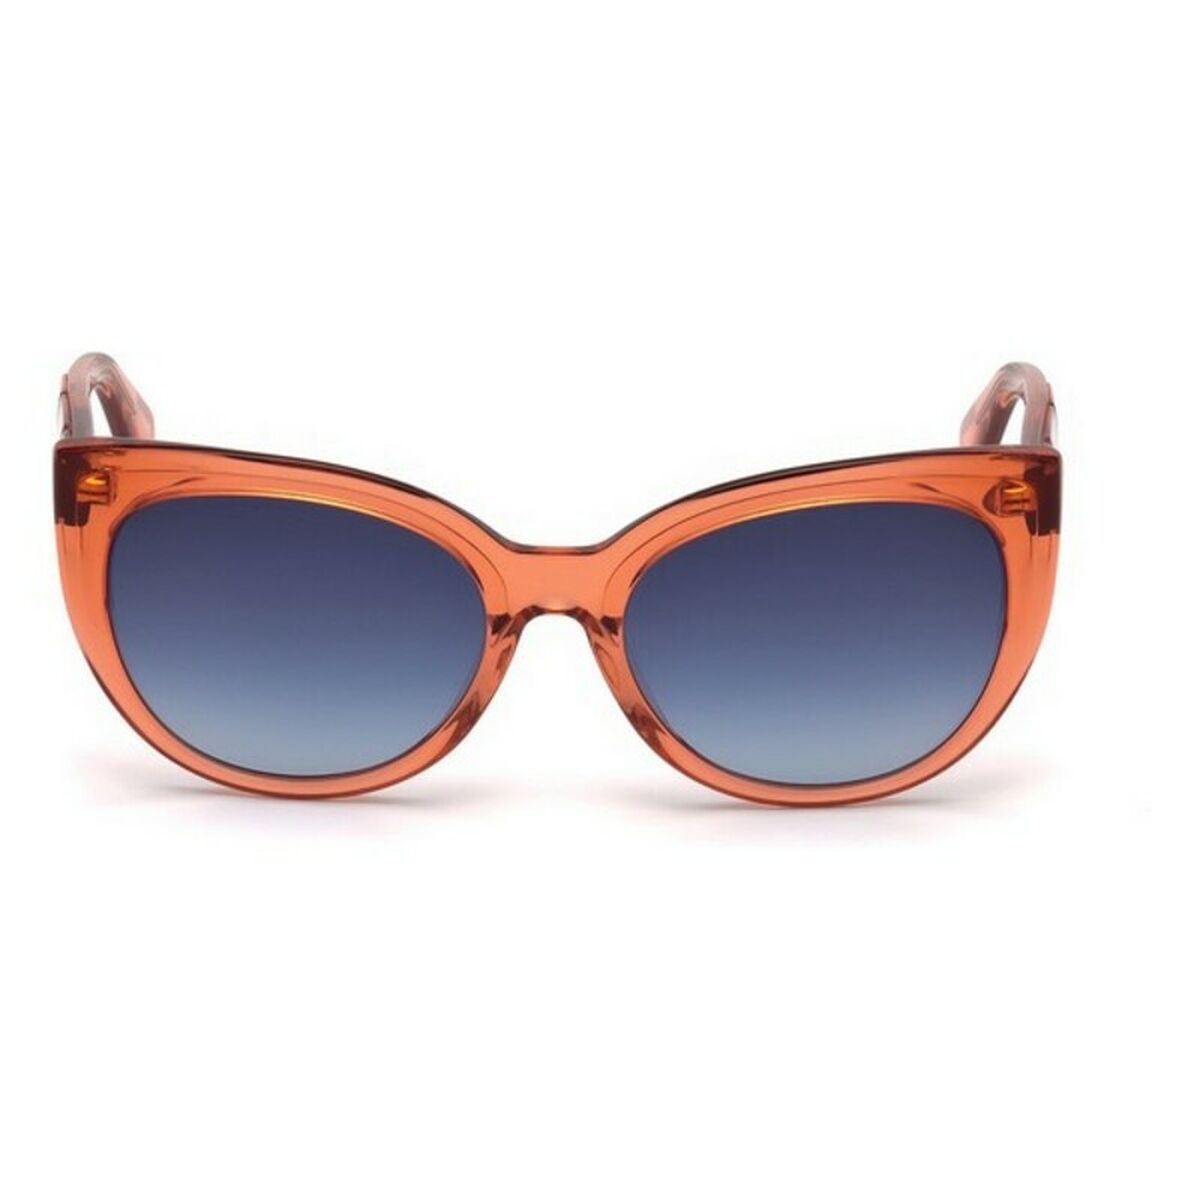 Ladies' Sunglasses Just Cavalli JC836S